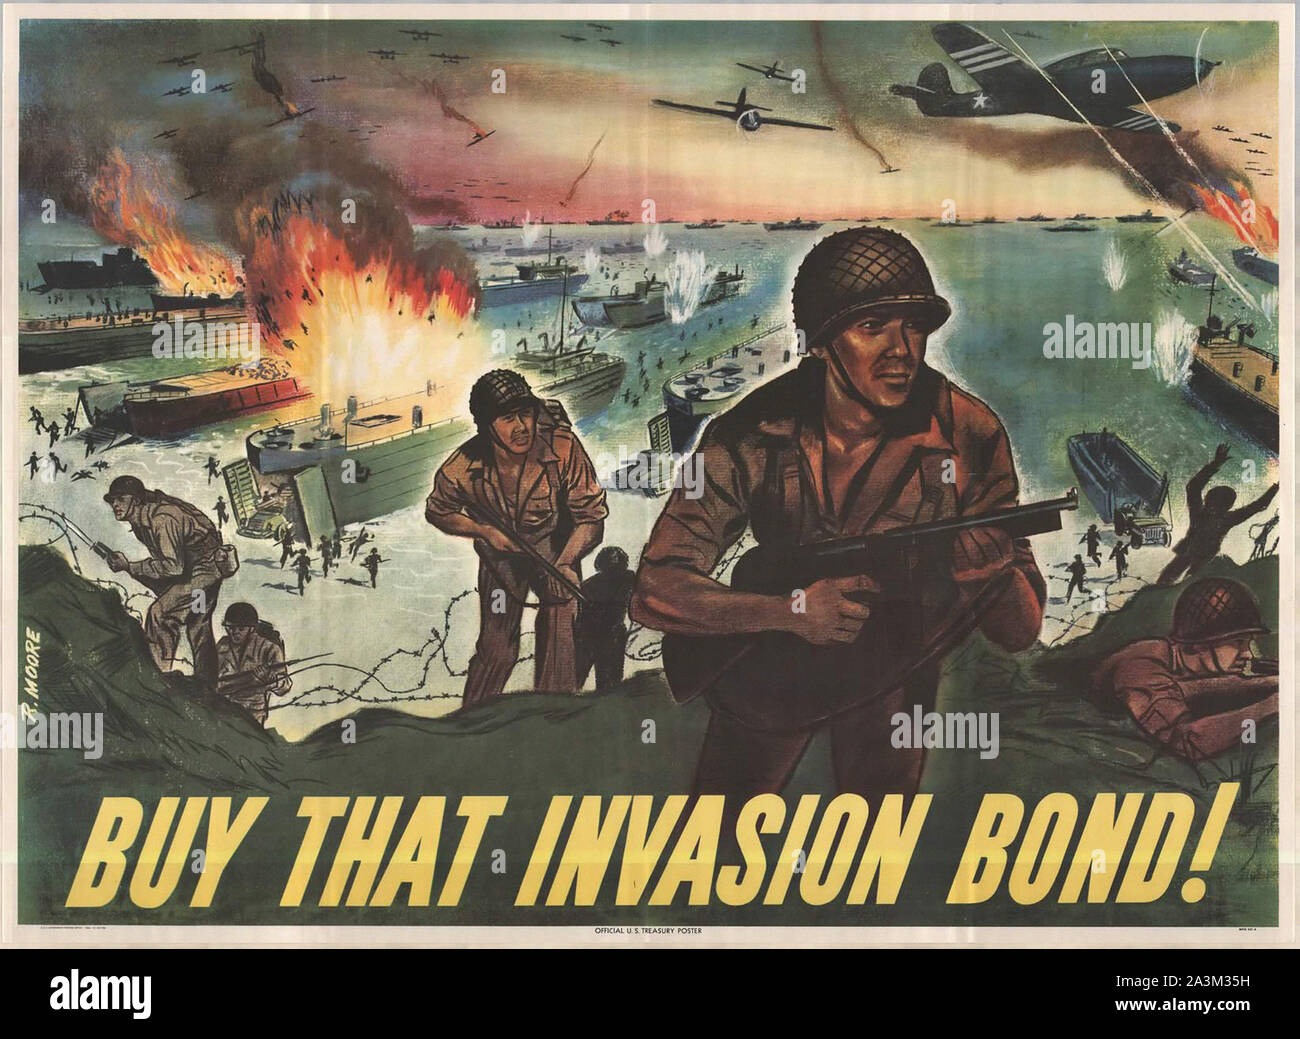 Acheter cette invasion Bond ! Invasion de Normandie - Vintage Affiches de propagande américaine Banque D'Images